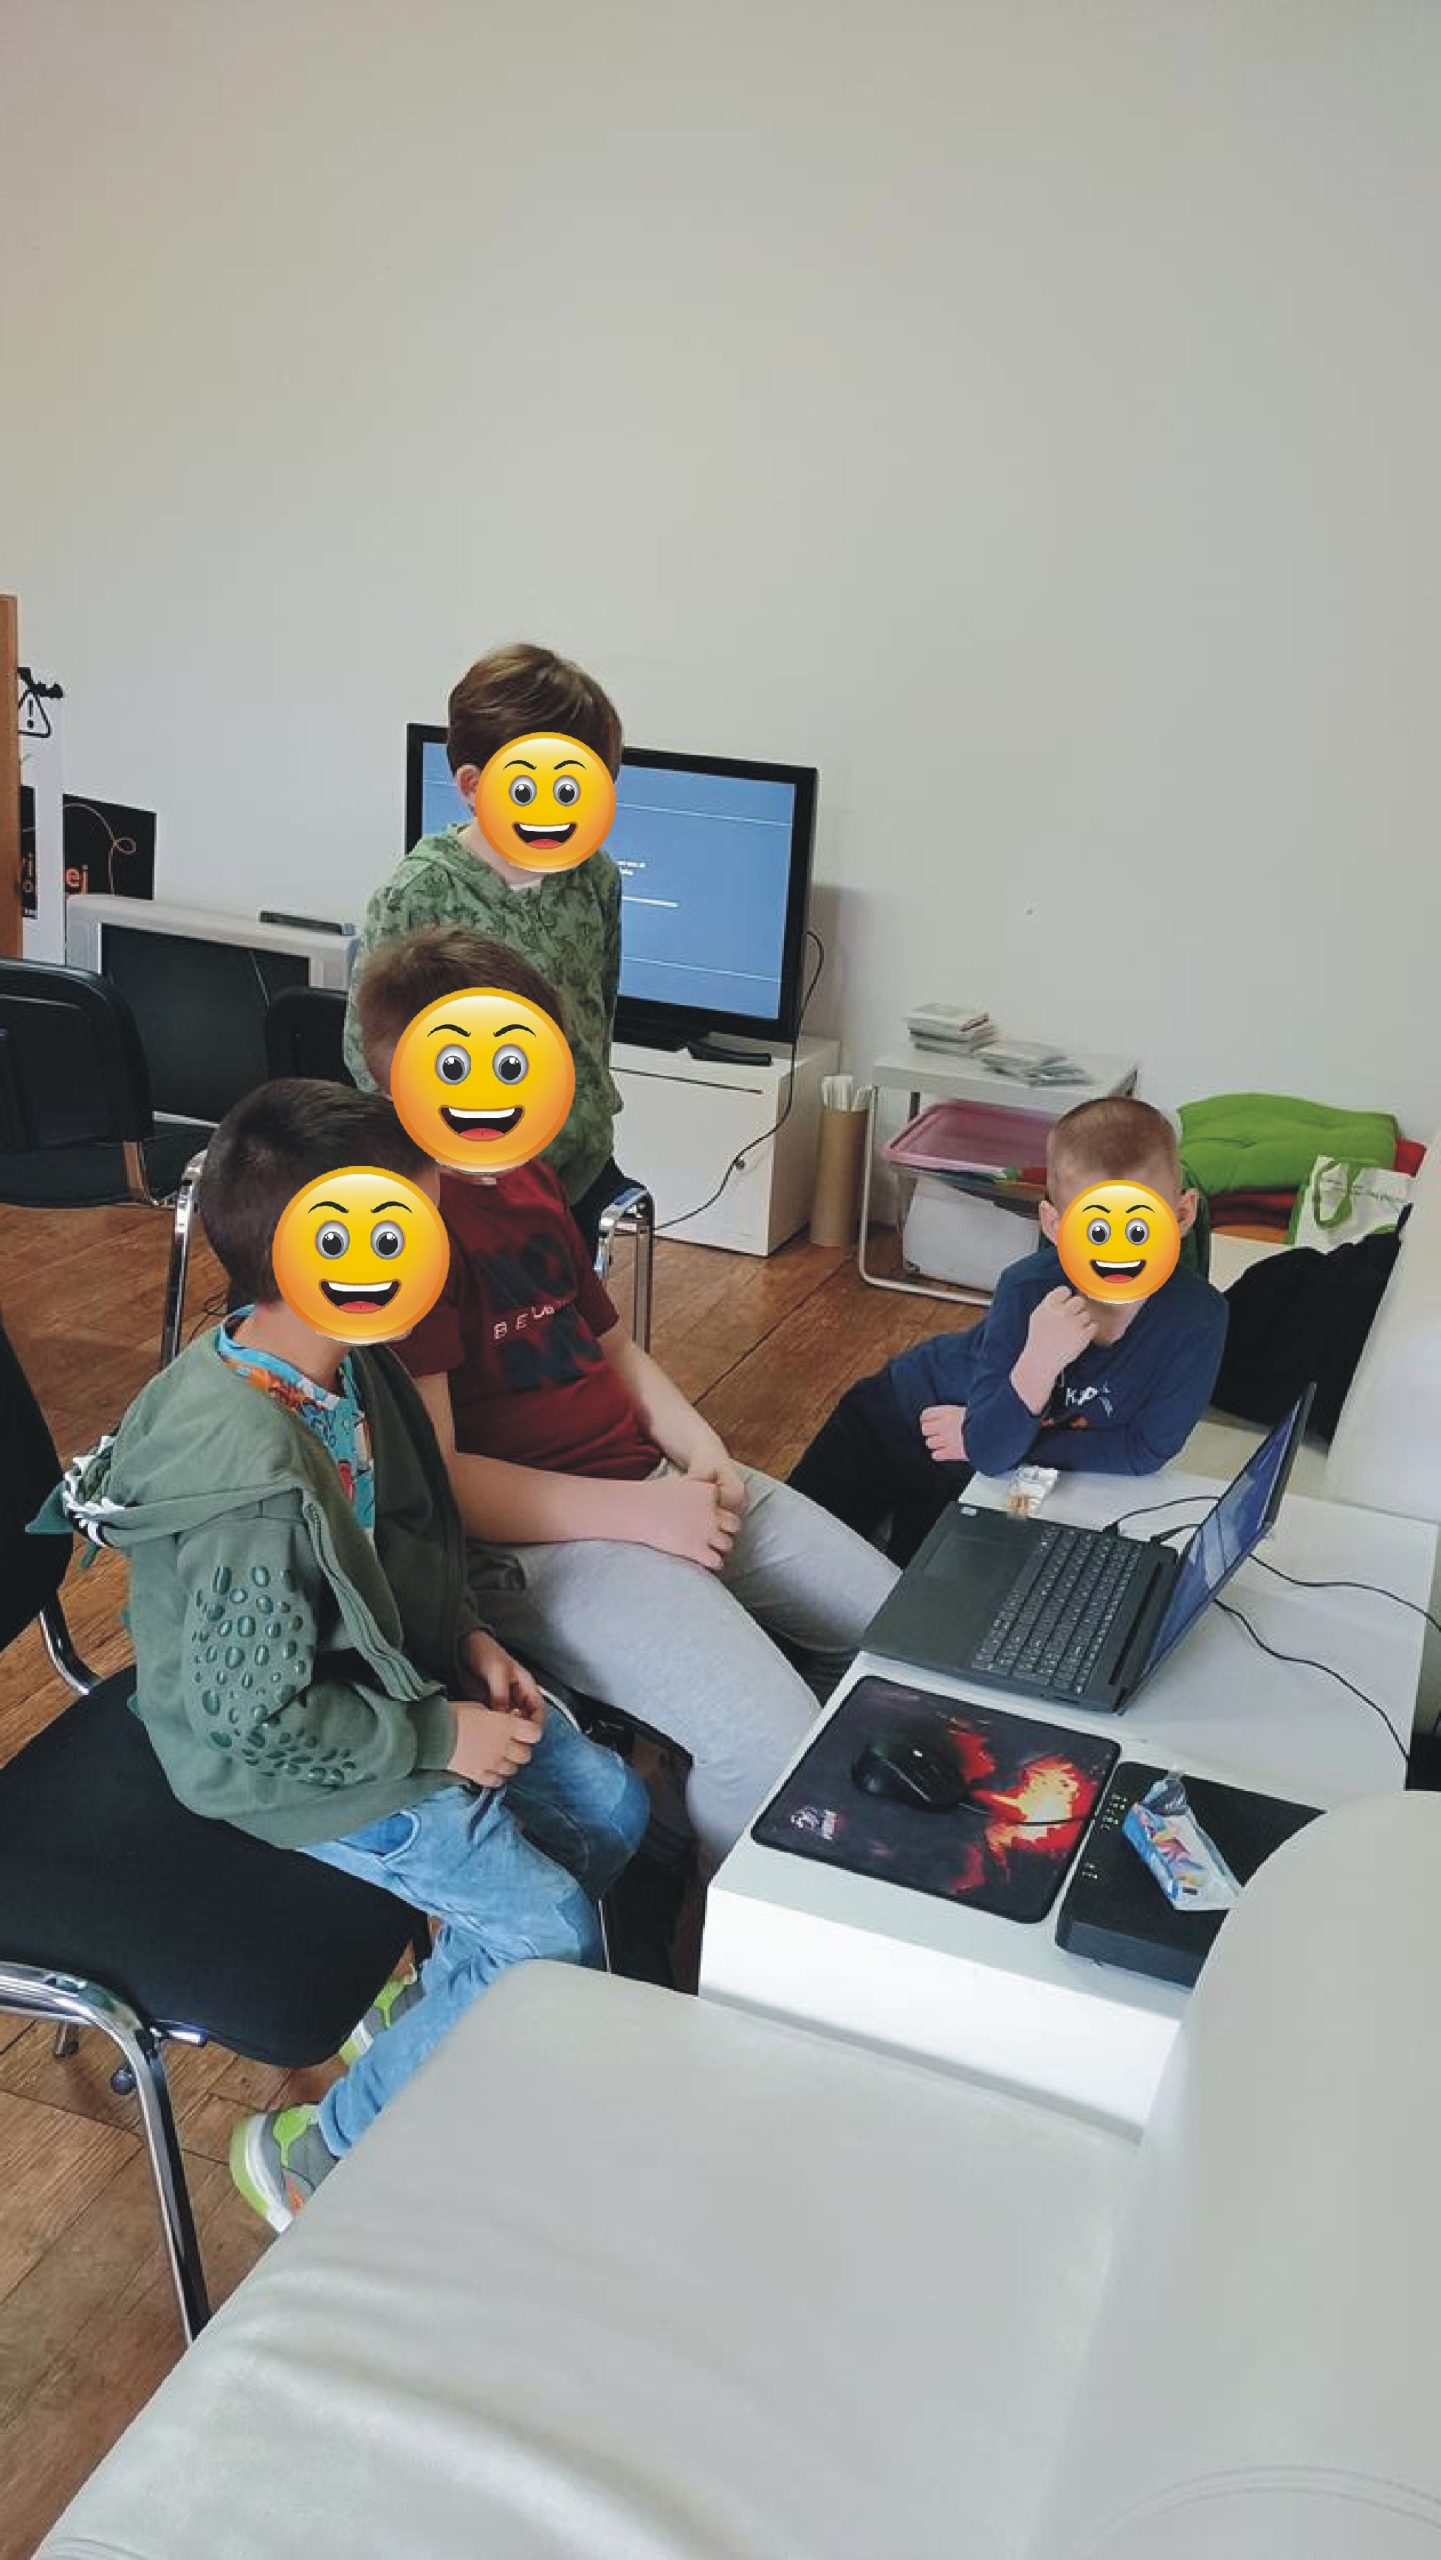 czterech chłopców ogląda cos na laptopie, maja pozasłaniane buzie emotkami